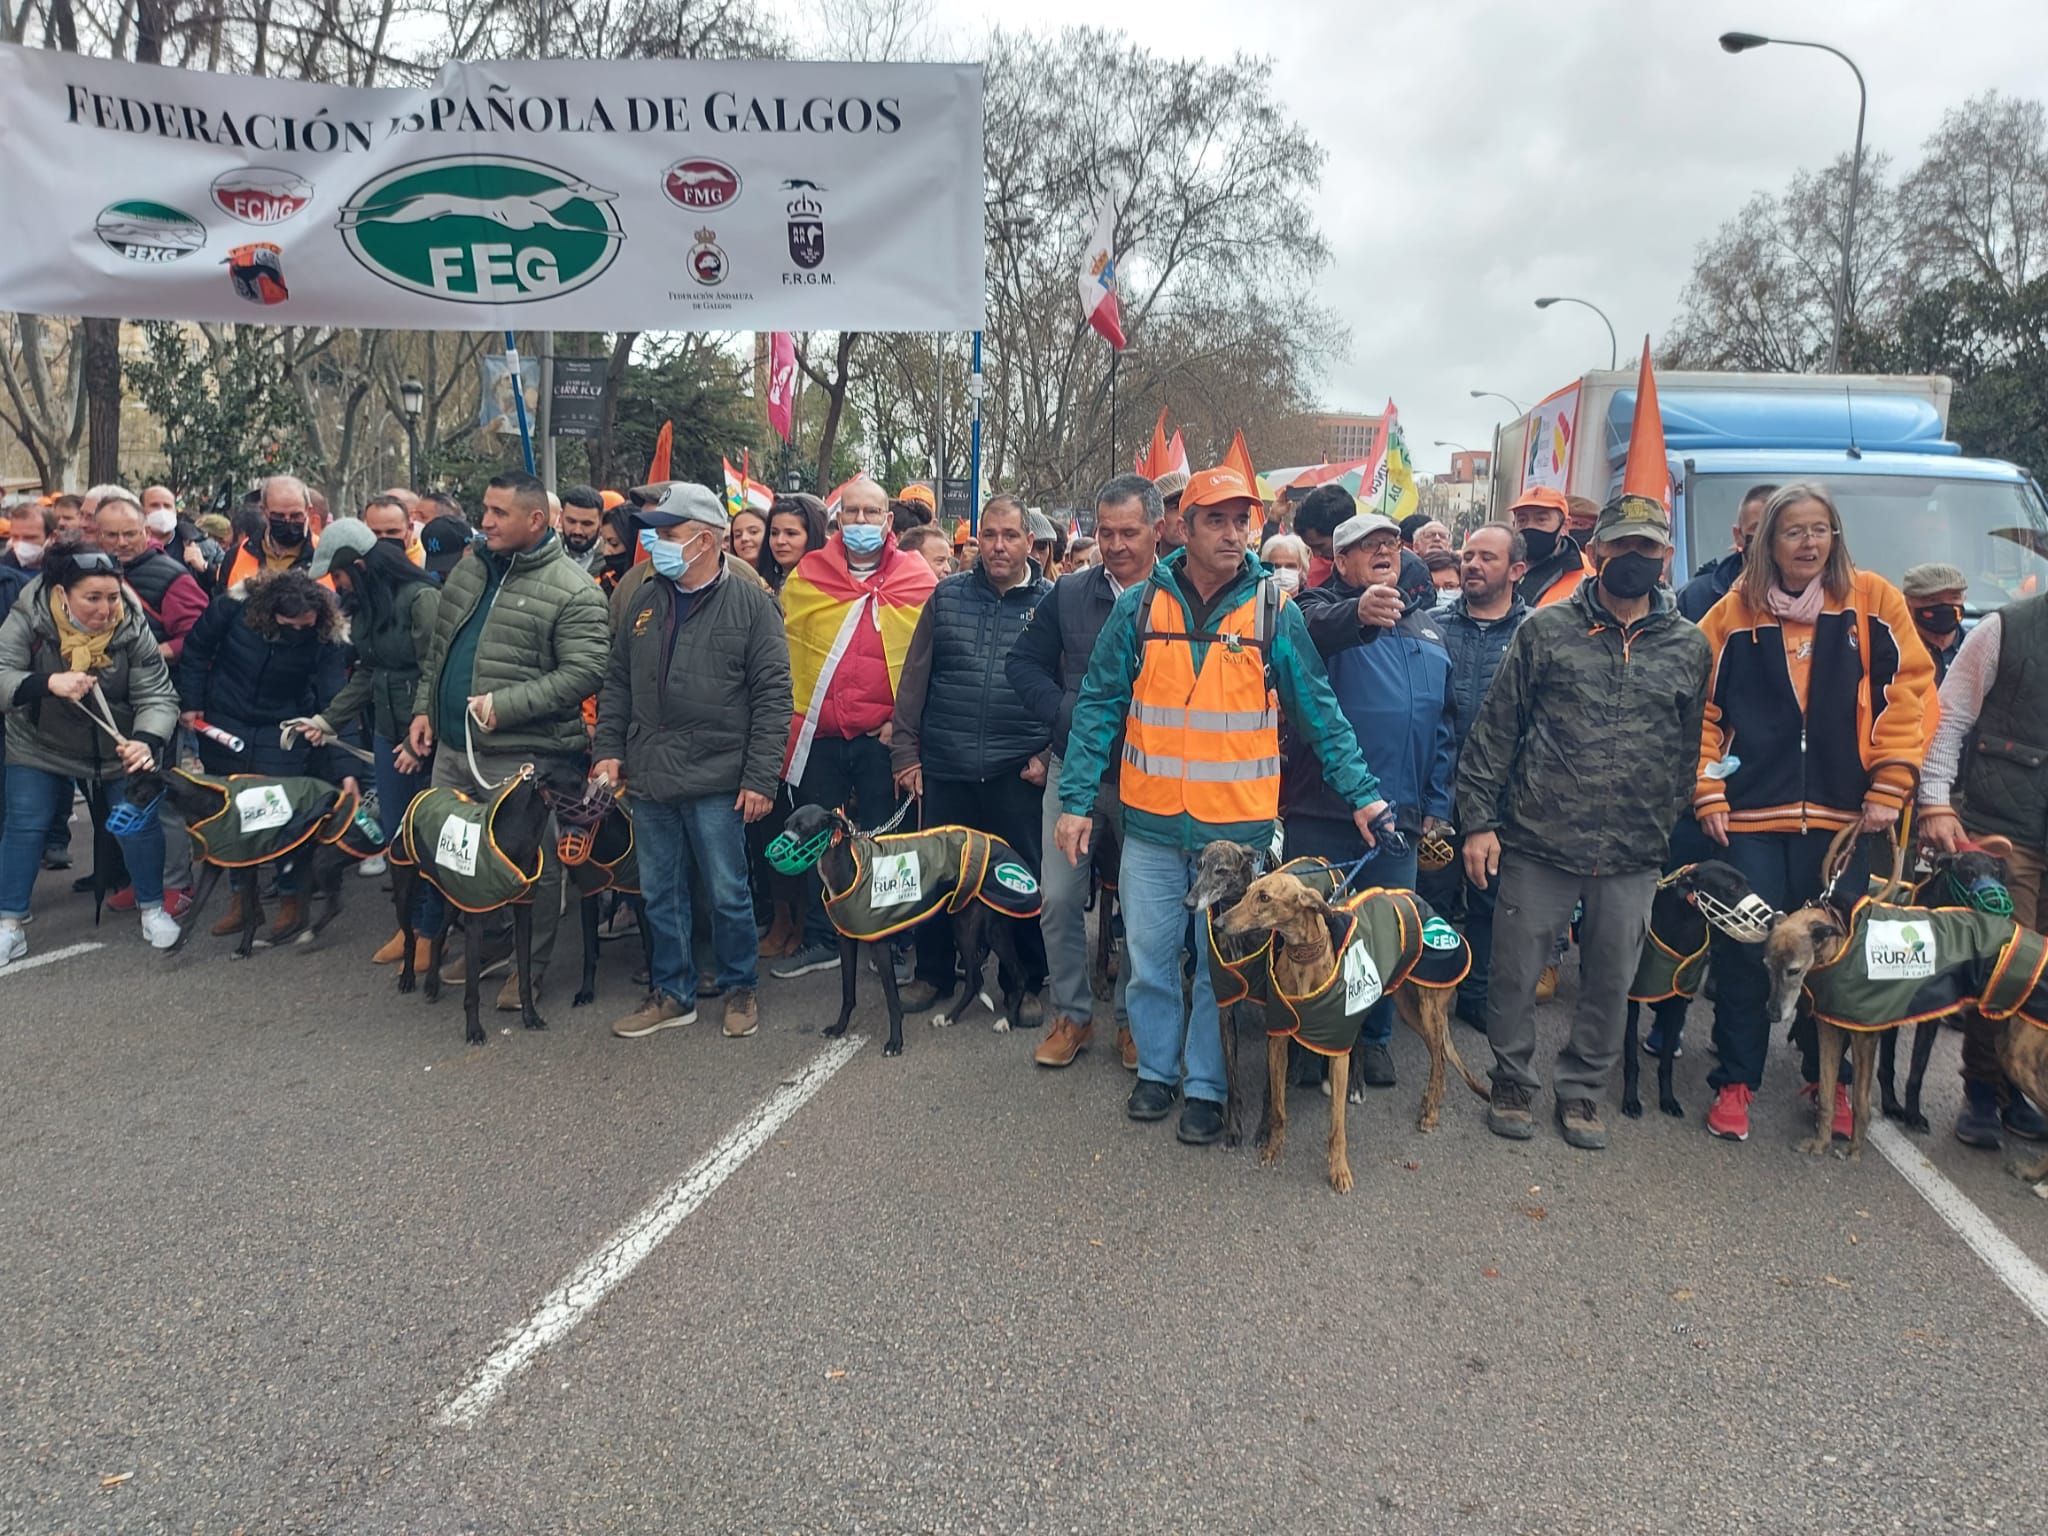 Miembros de las Federaciones Andaluza y Española de Galgos, en la manifestación de Madrid.